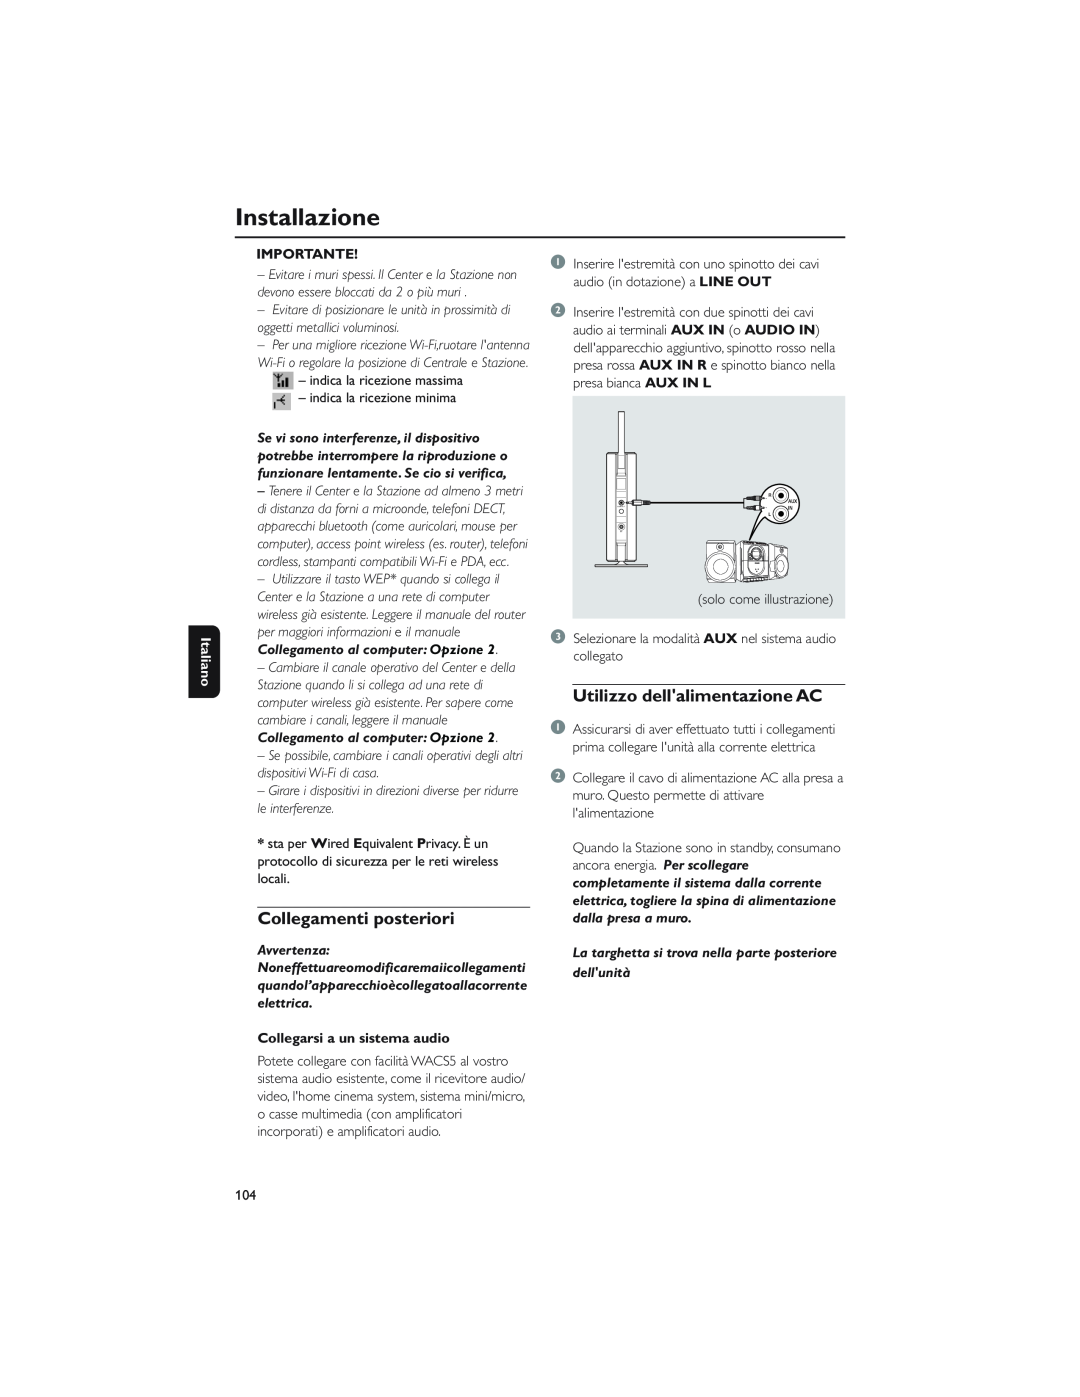 Philips WAS5 user manual Installazione, Collegamenti posteriori, Utilizzo dellalimentazione AC, Italiano, Importante 